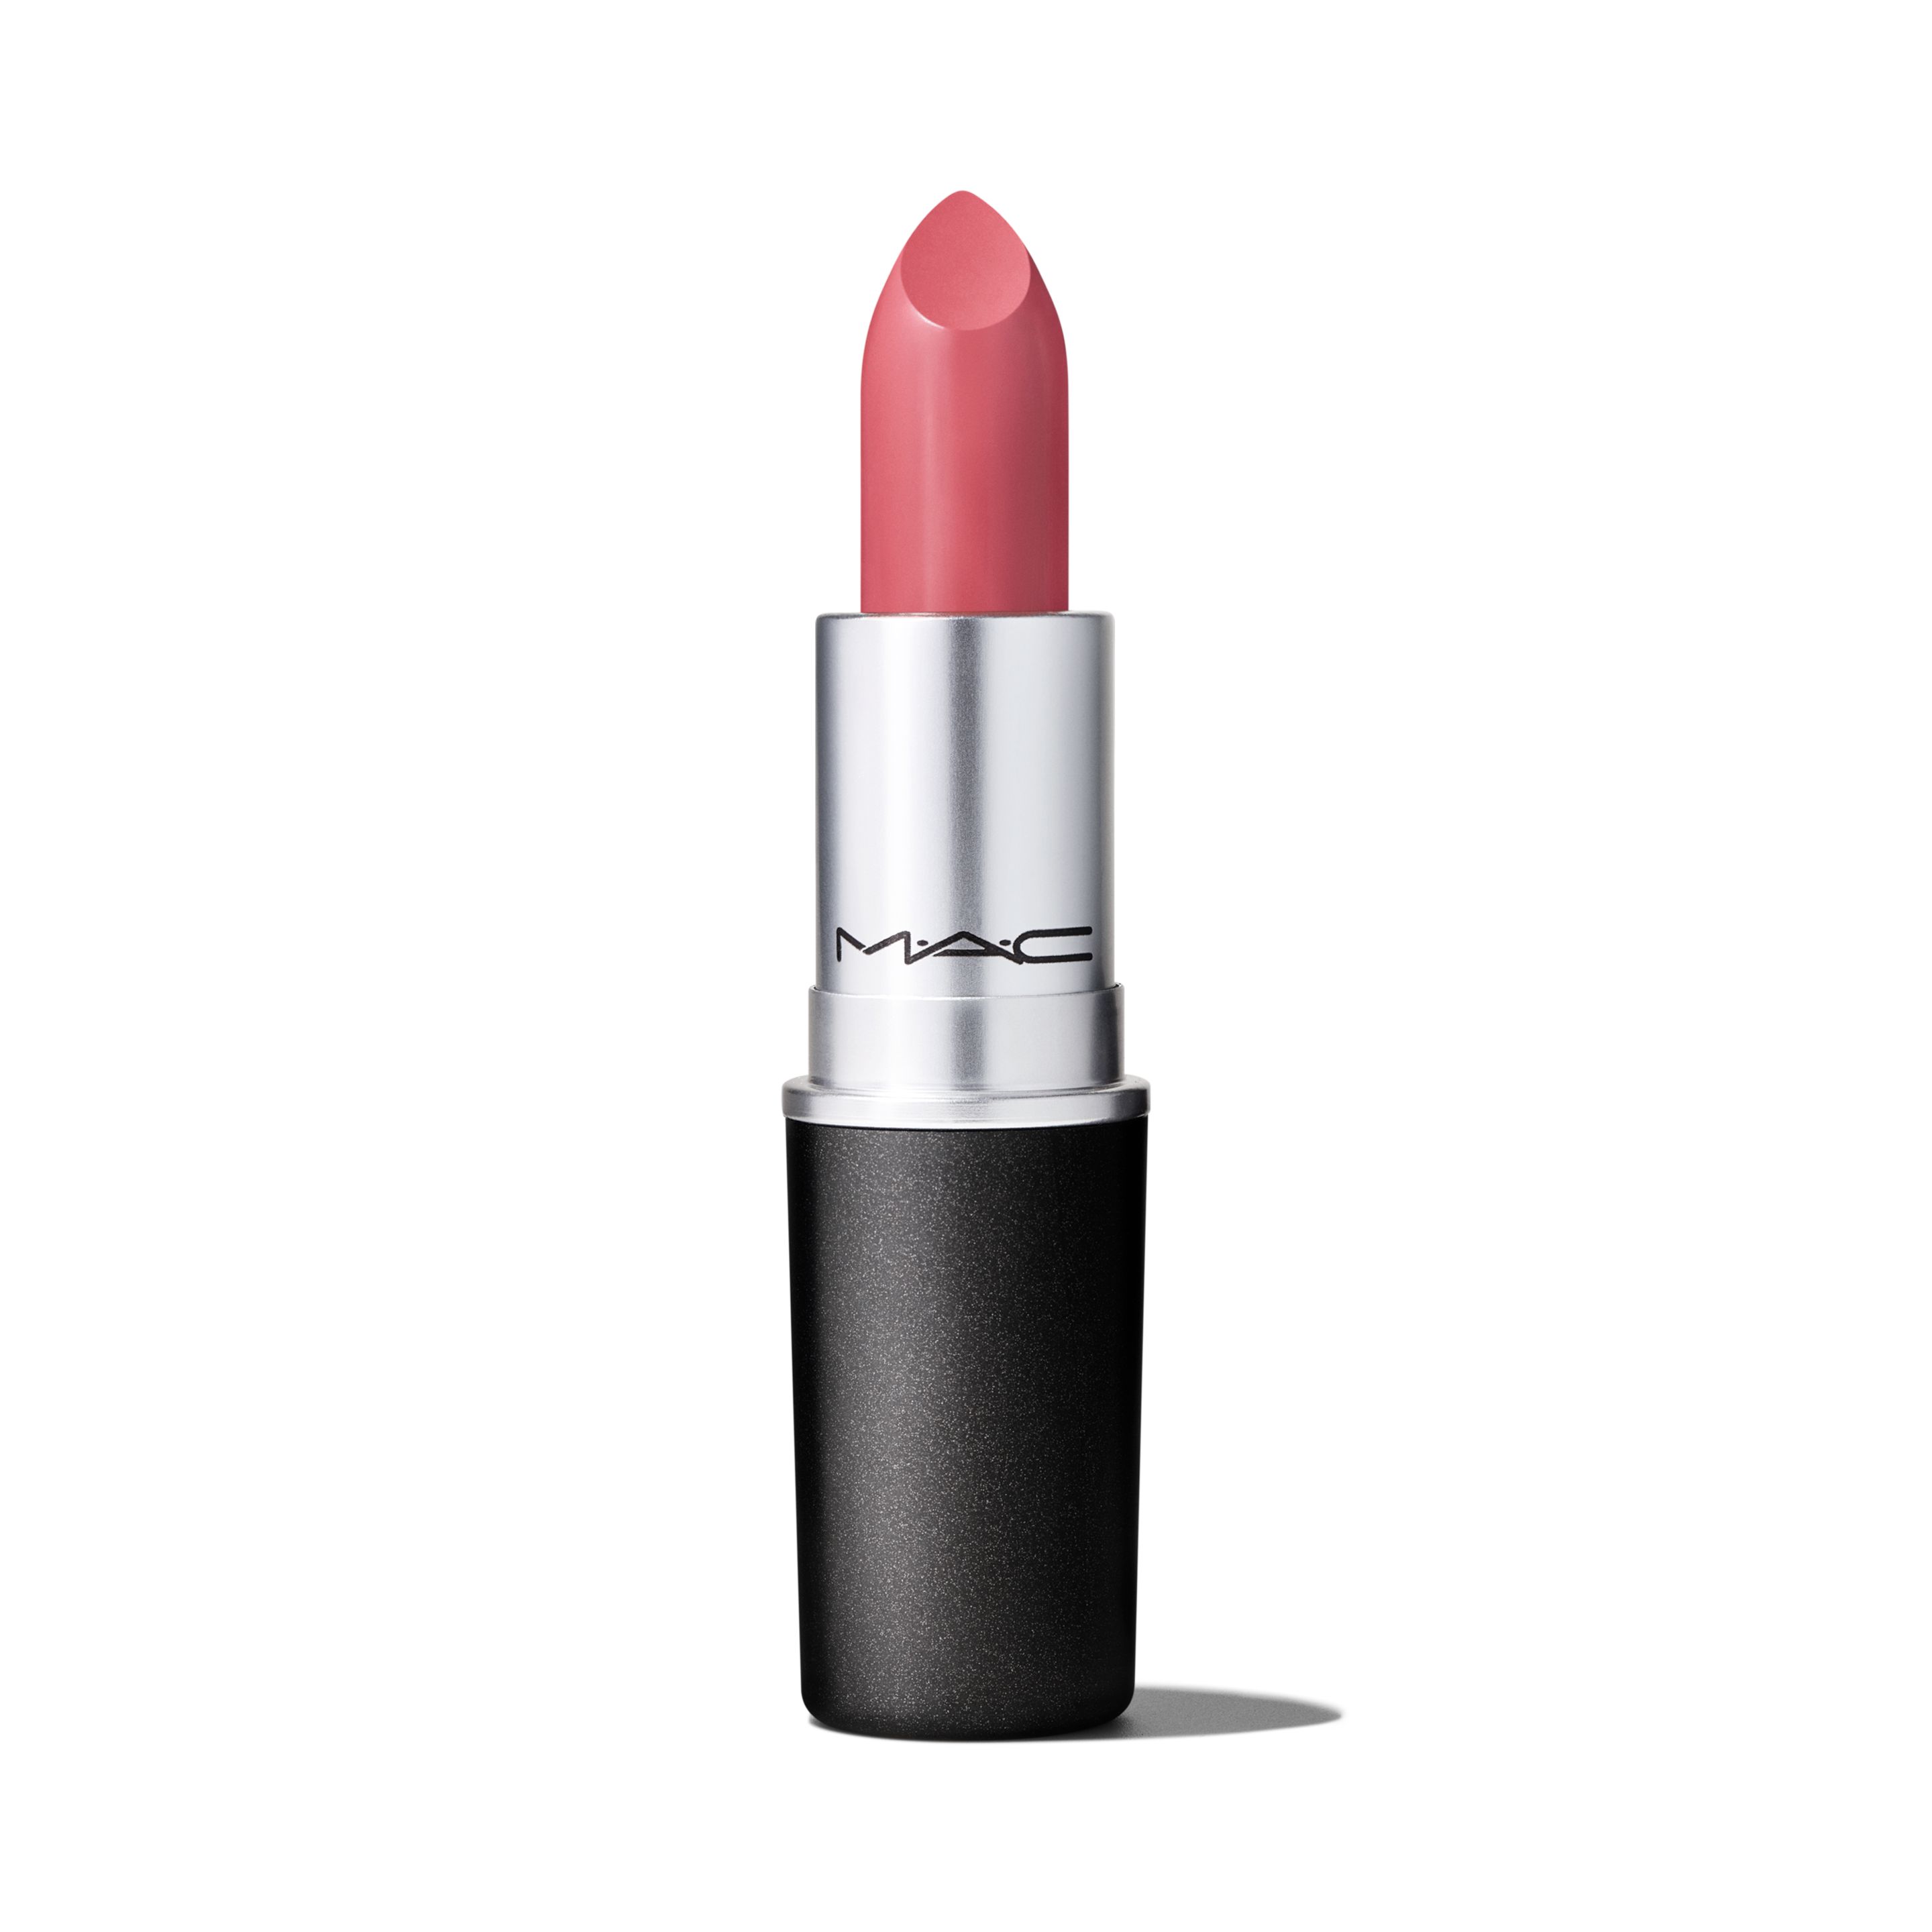 Помада для губ MAC Cosmetics Satin Lipstick кремовая, тон Brave, 3 г помада mac cosmetics satin lipstick rebel 3 г